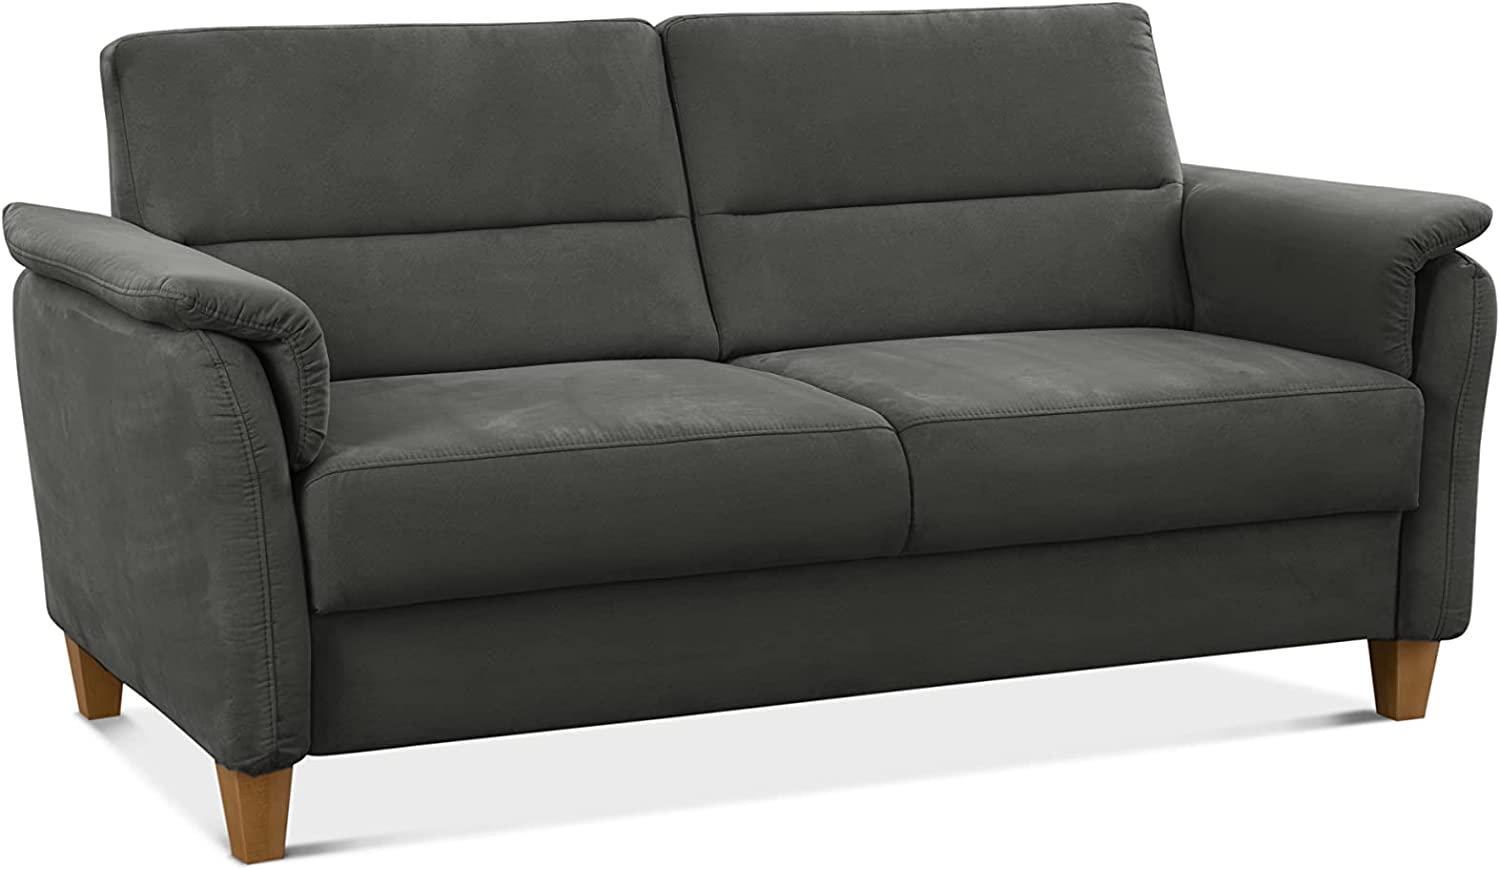 CAVADORE 3er-Sofa Palera mit Federkern / Kompakte Dreisitzer-Couch im Landhaus-Stil / passender Sessel und Hocker optional / 179 x 89 x 89 / Mikrofaser, Grau Bild 1